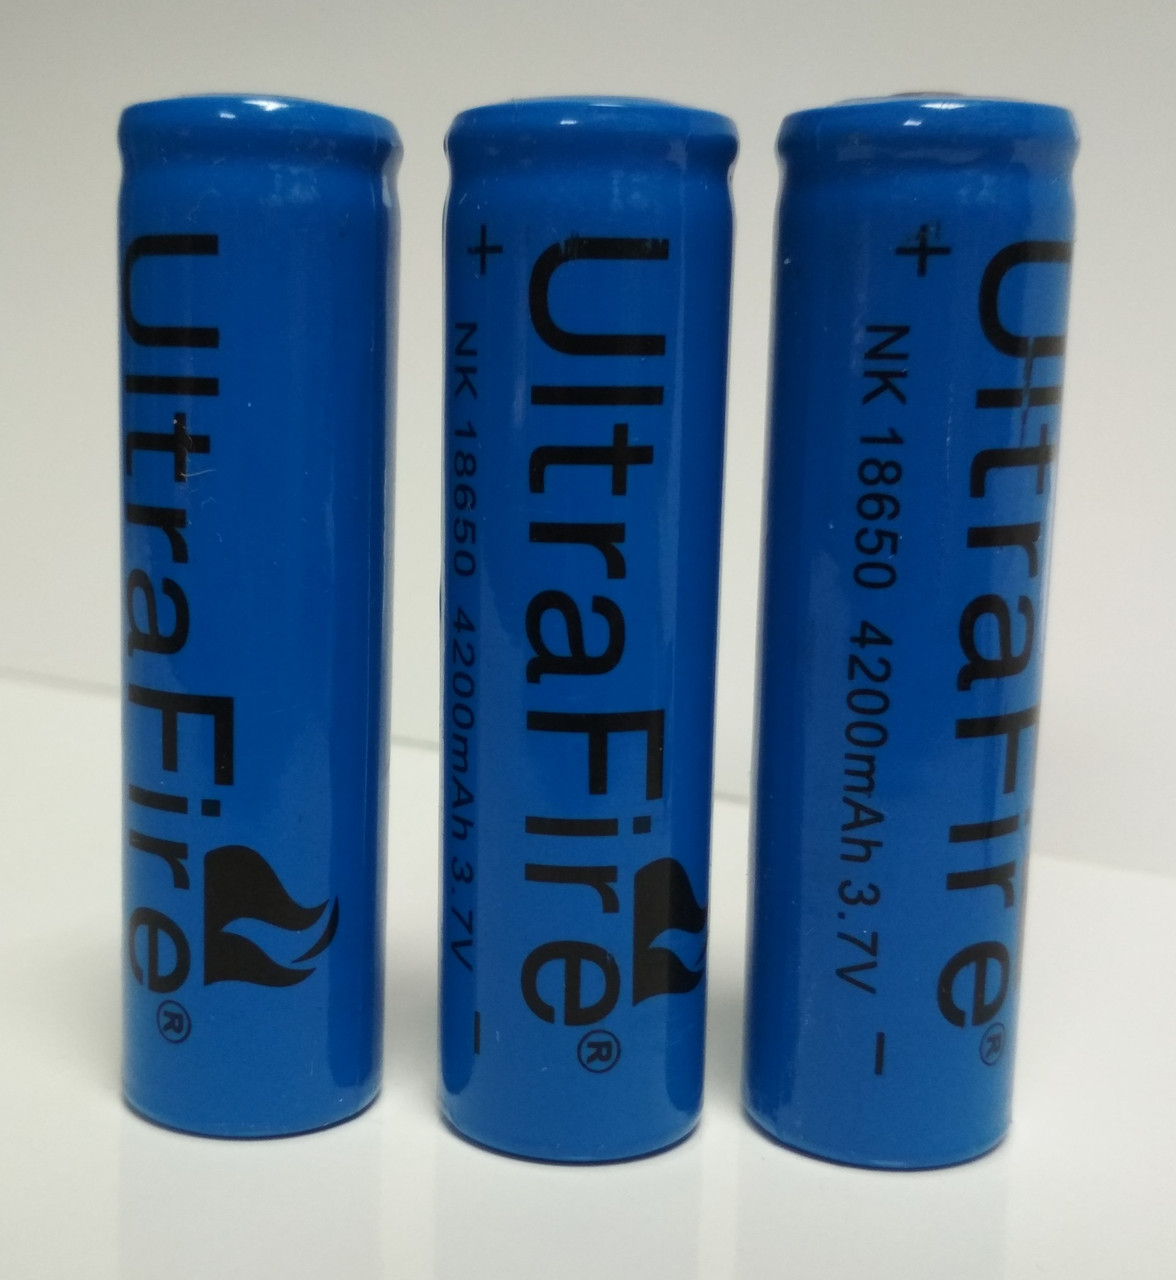 Аккумулятор Ultrafire 18650 3.7 V 4200 mAh Li-ion (3 шт/упаковка)